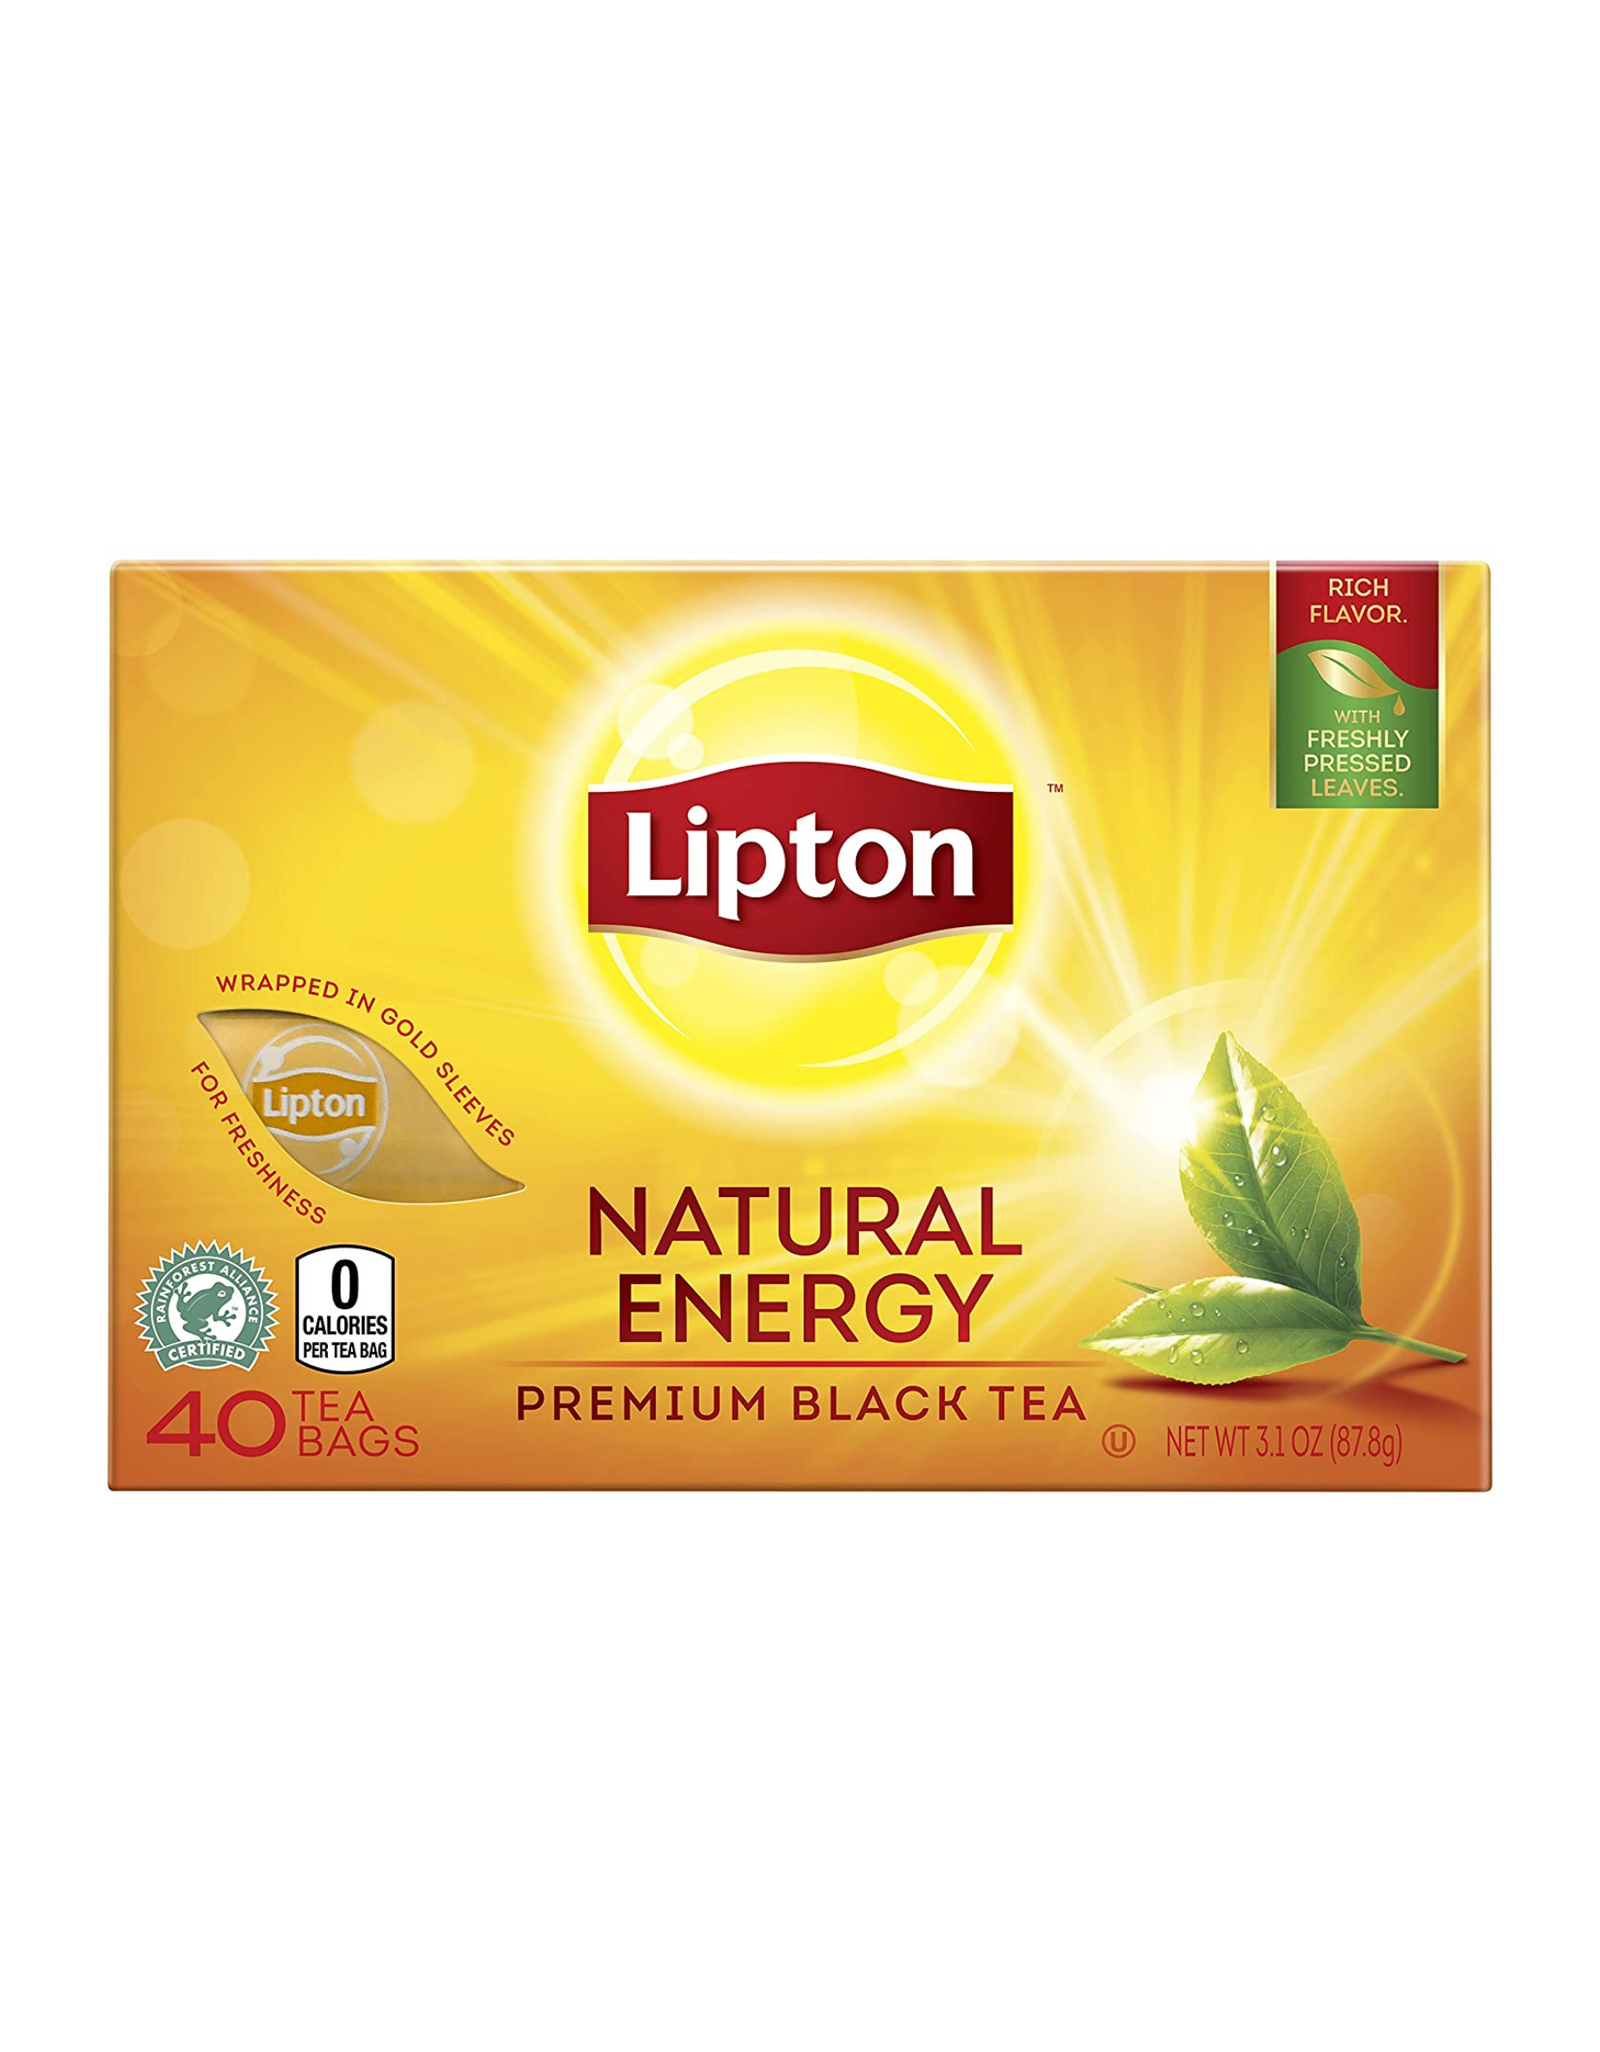 Lipton Premium Black Tea Bags, Natural Energy, 40 ct (Pack of 1)